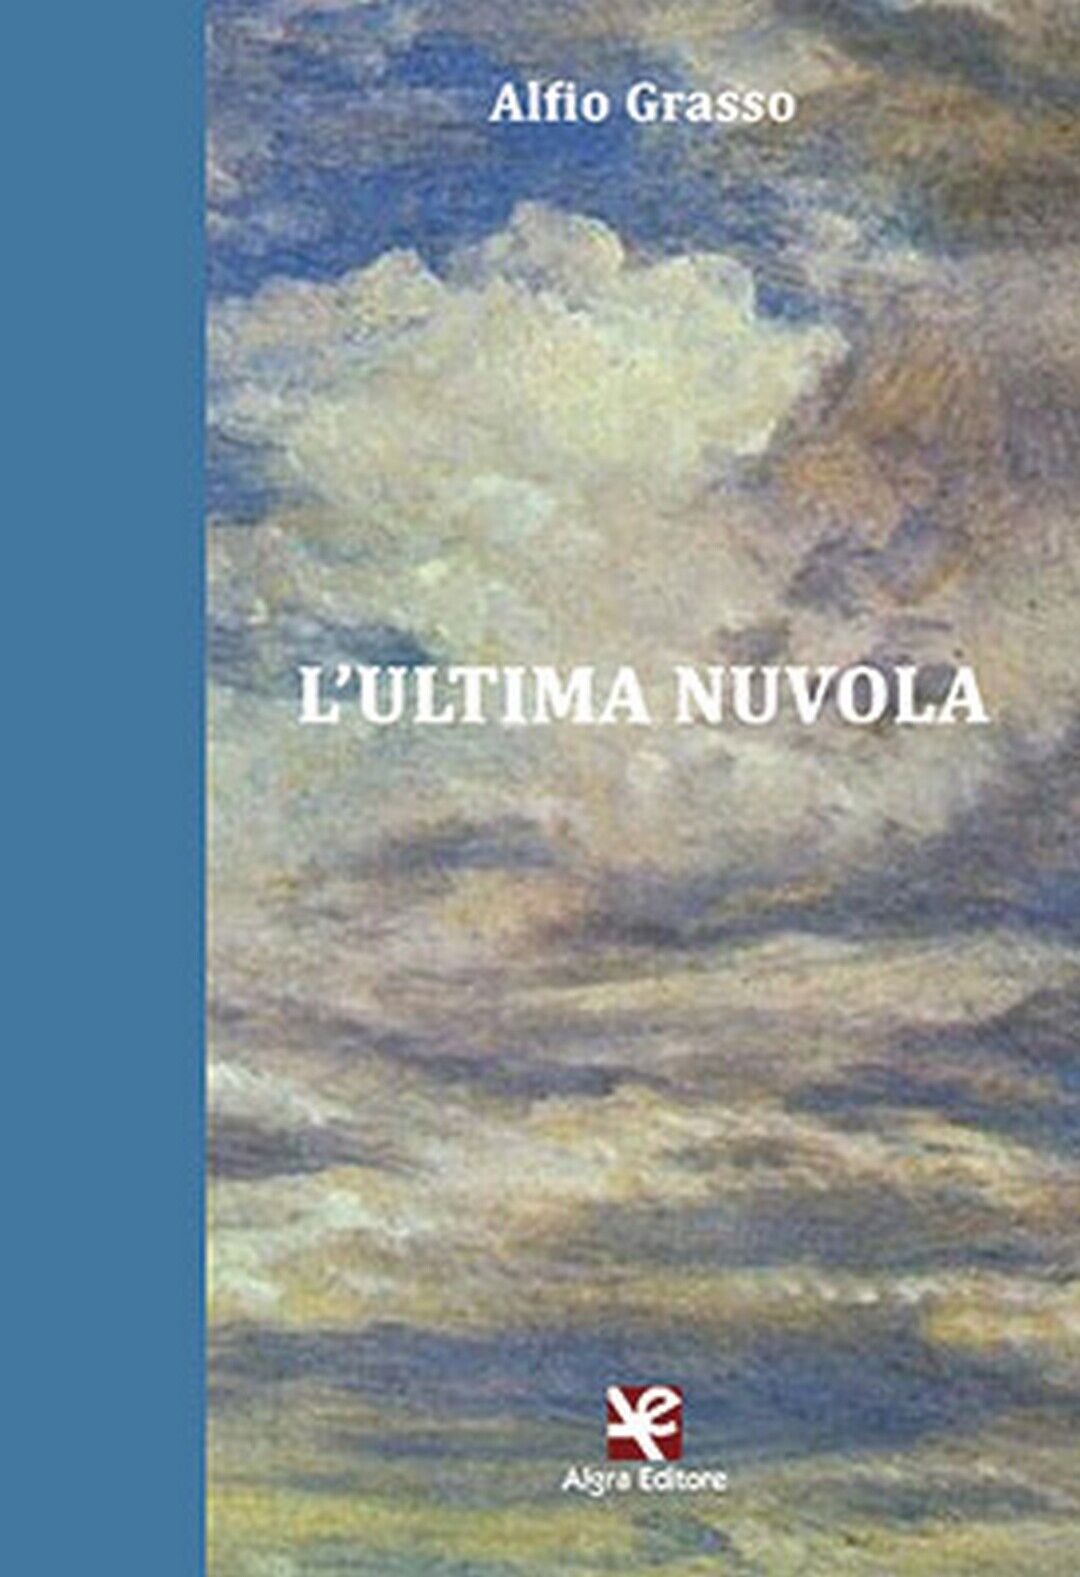 L'ultima nuvola  di Alfio Grasso,  Algra Editore